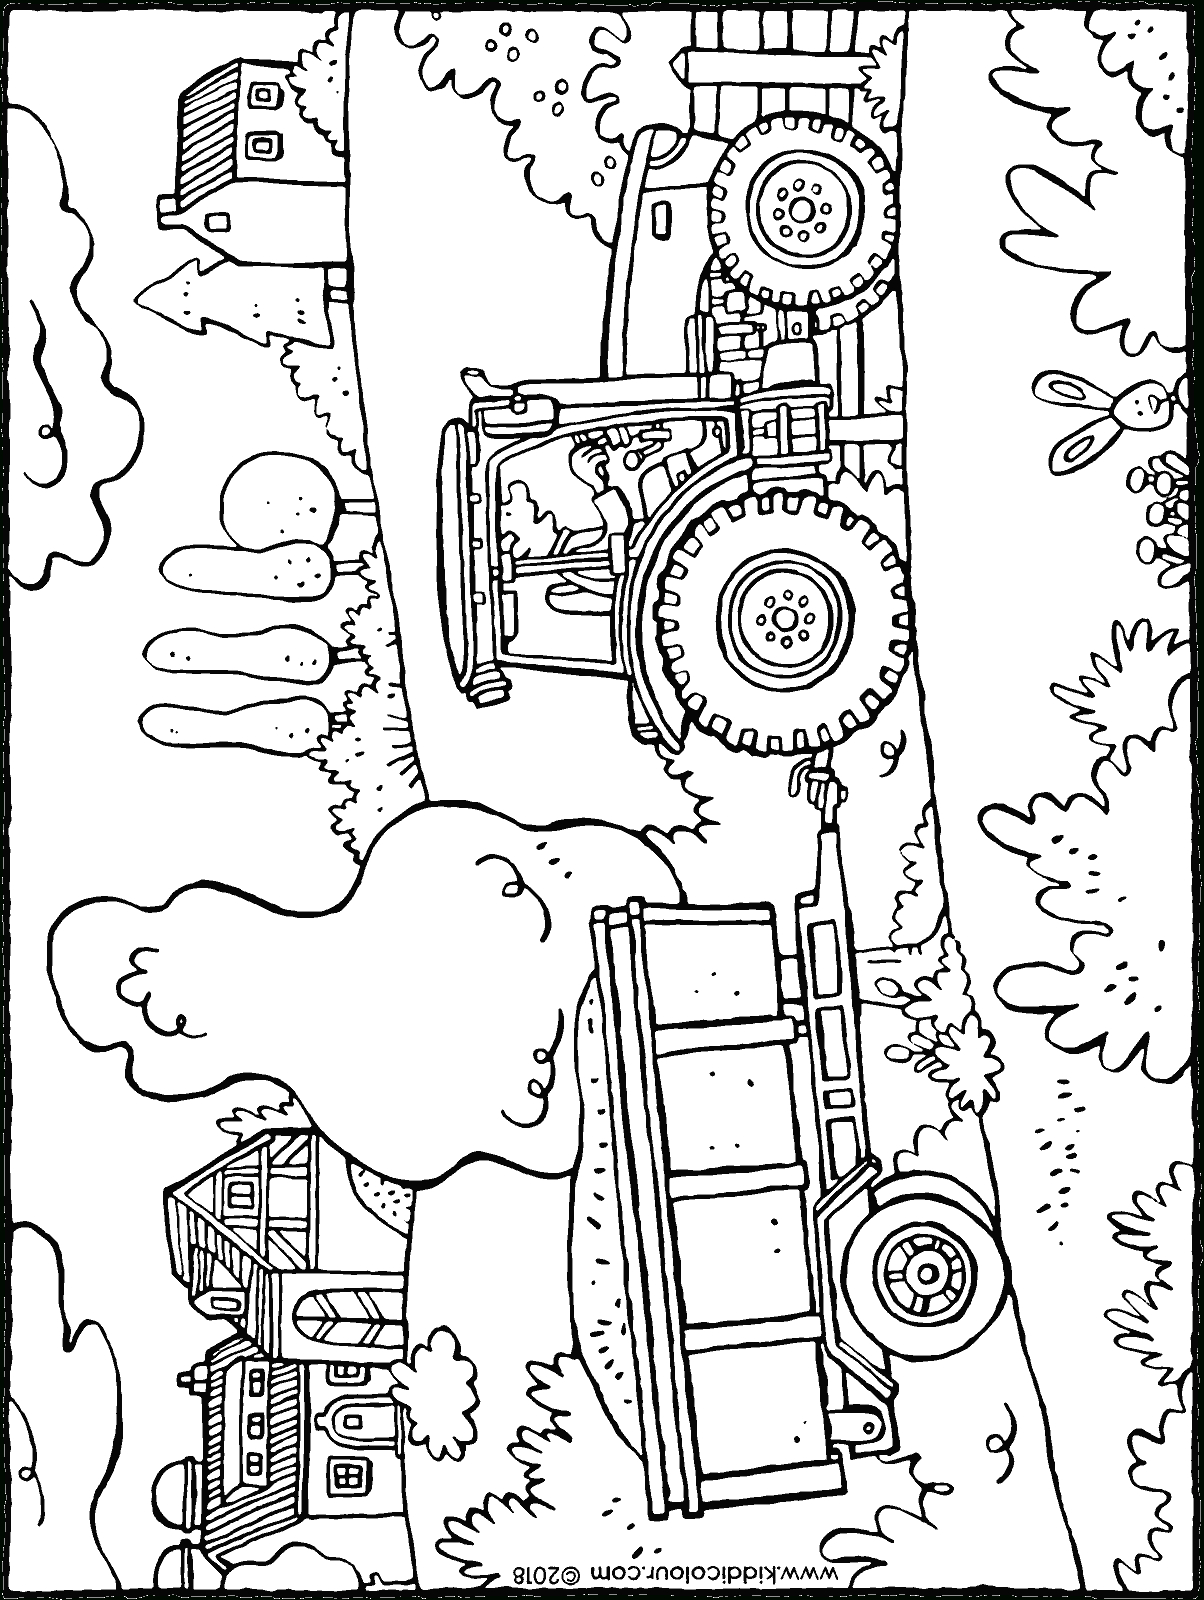 Traktor Mit Anhänger - Kiddimalseite mit Ausmalbilder Trecker